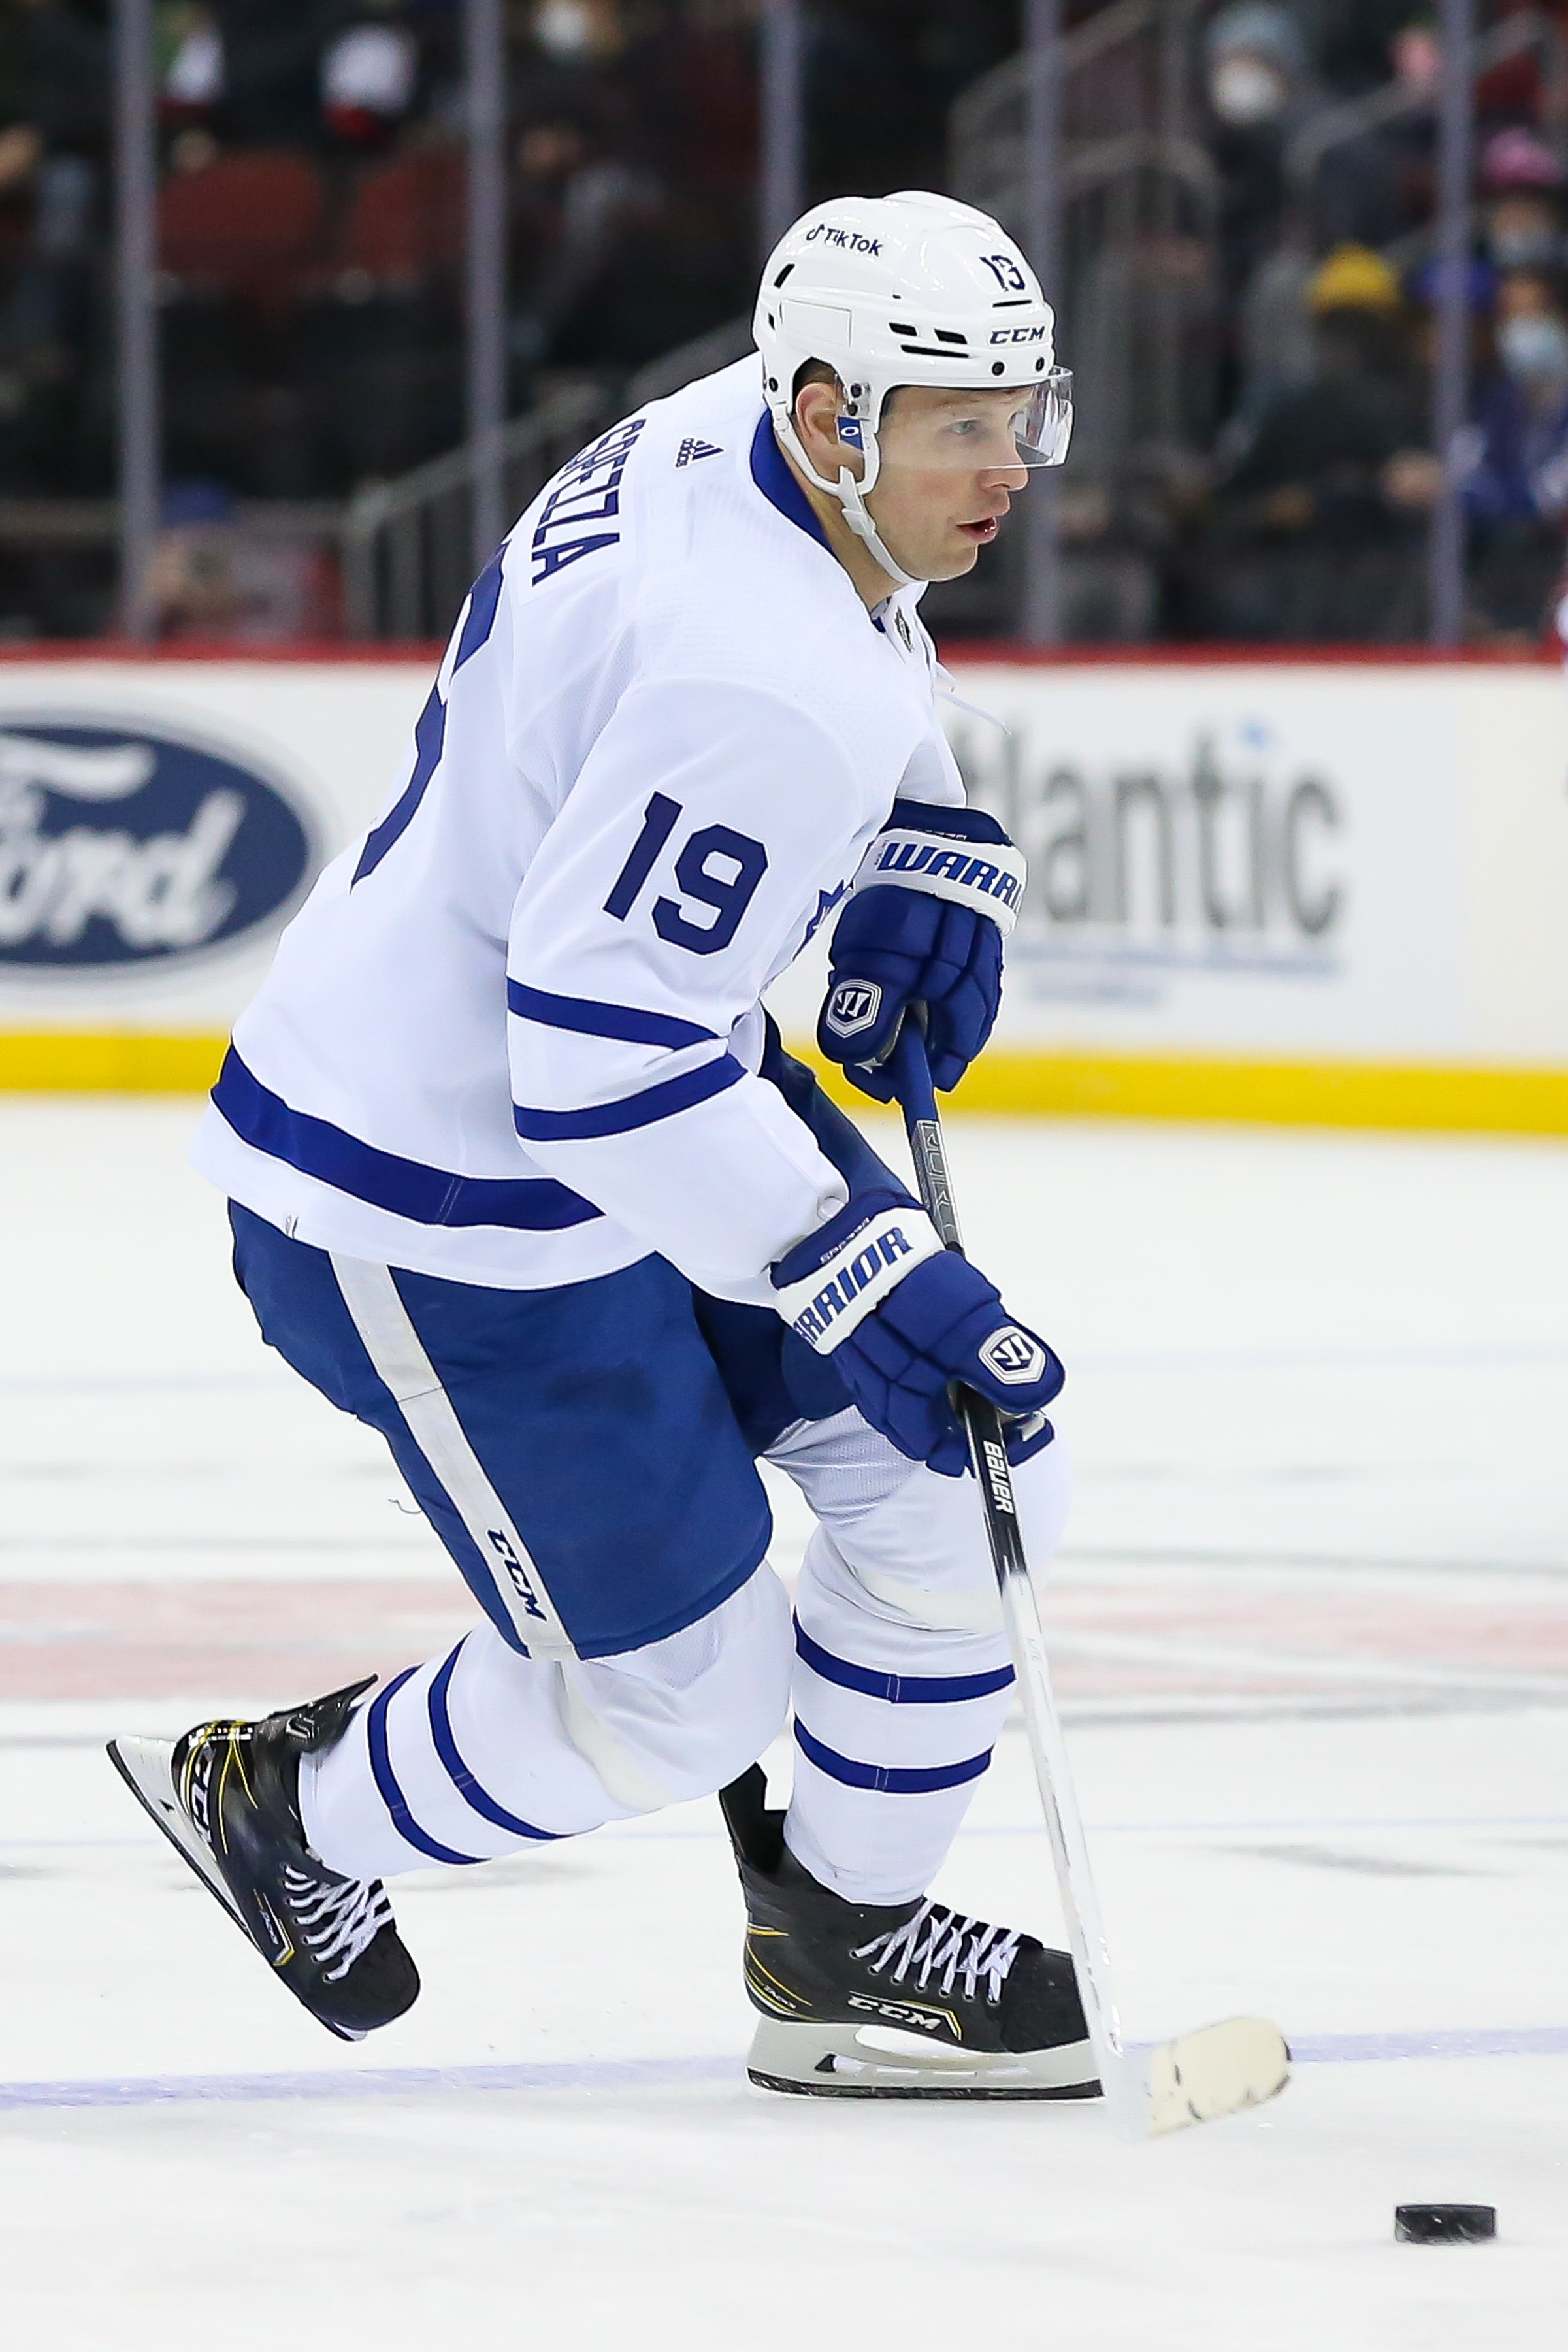 Maple Leafs' Player Jason Spezza Announces Retirement at 38